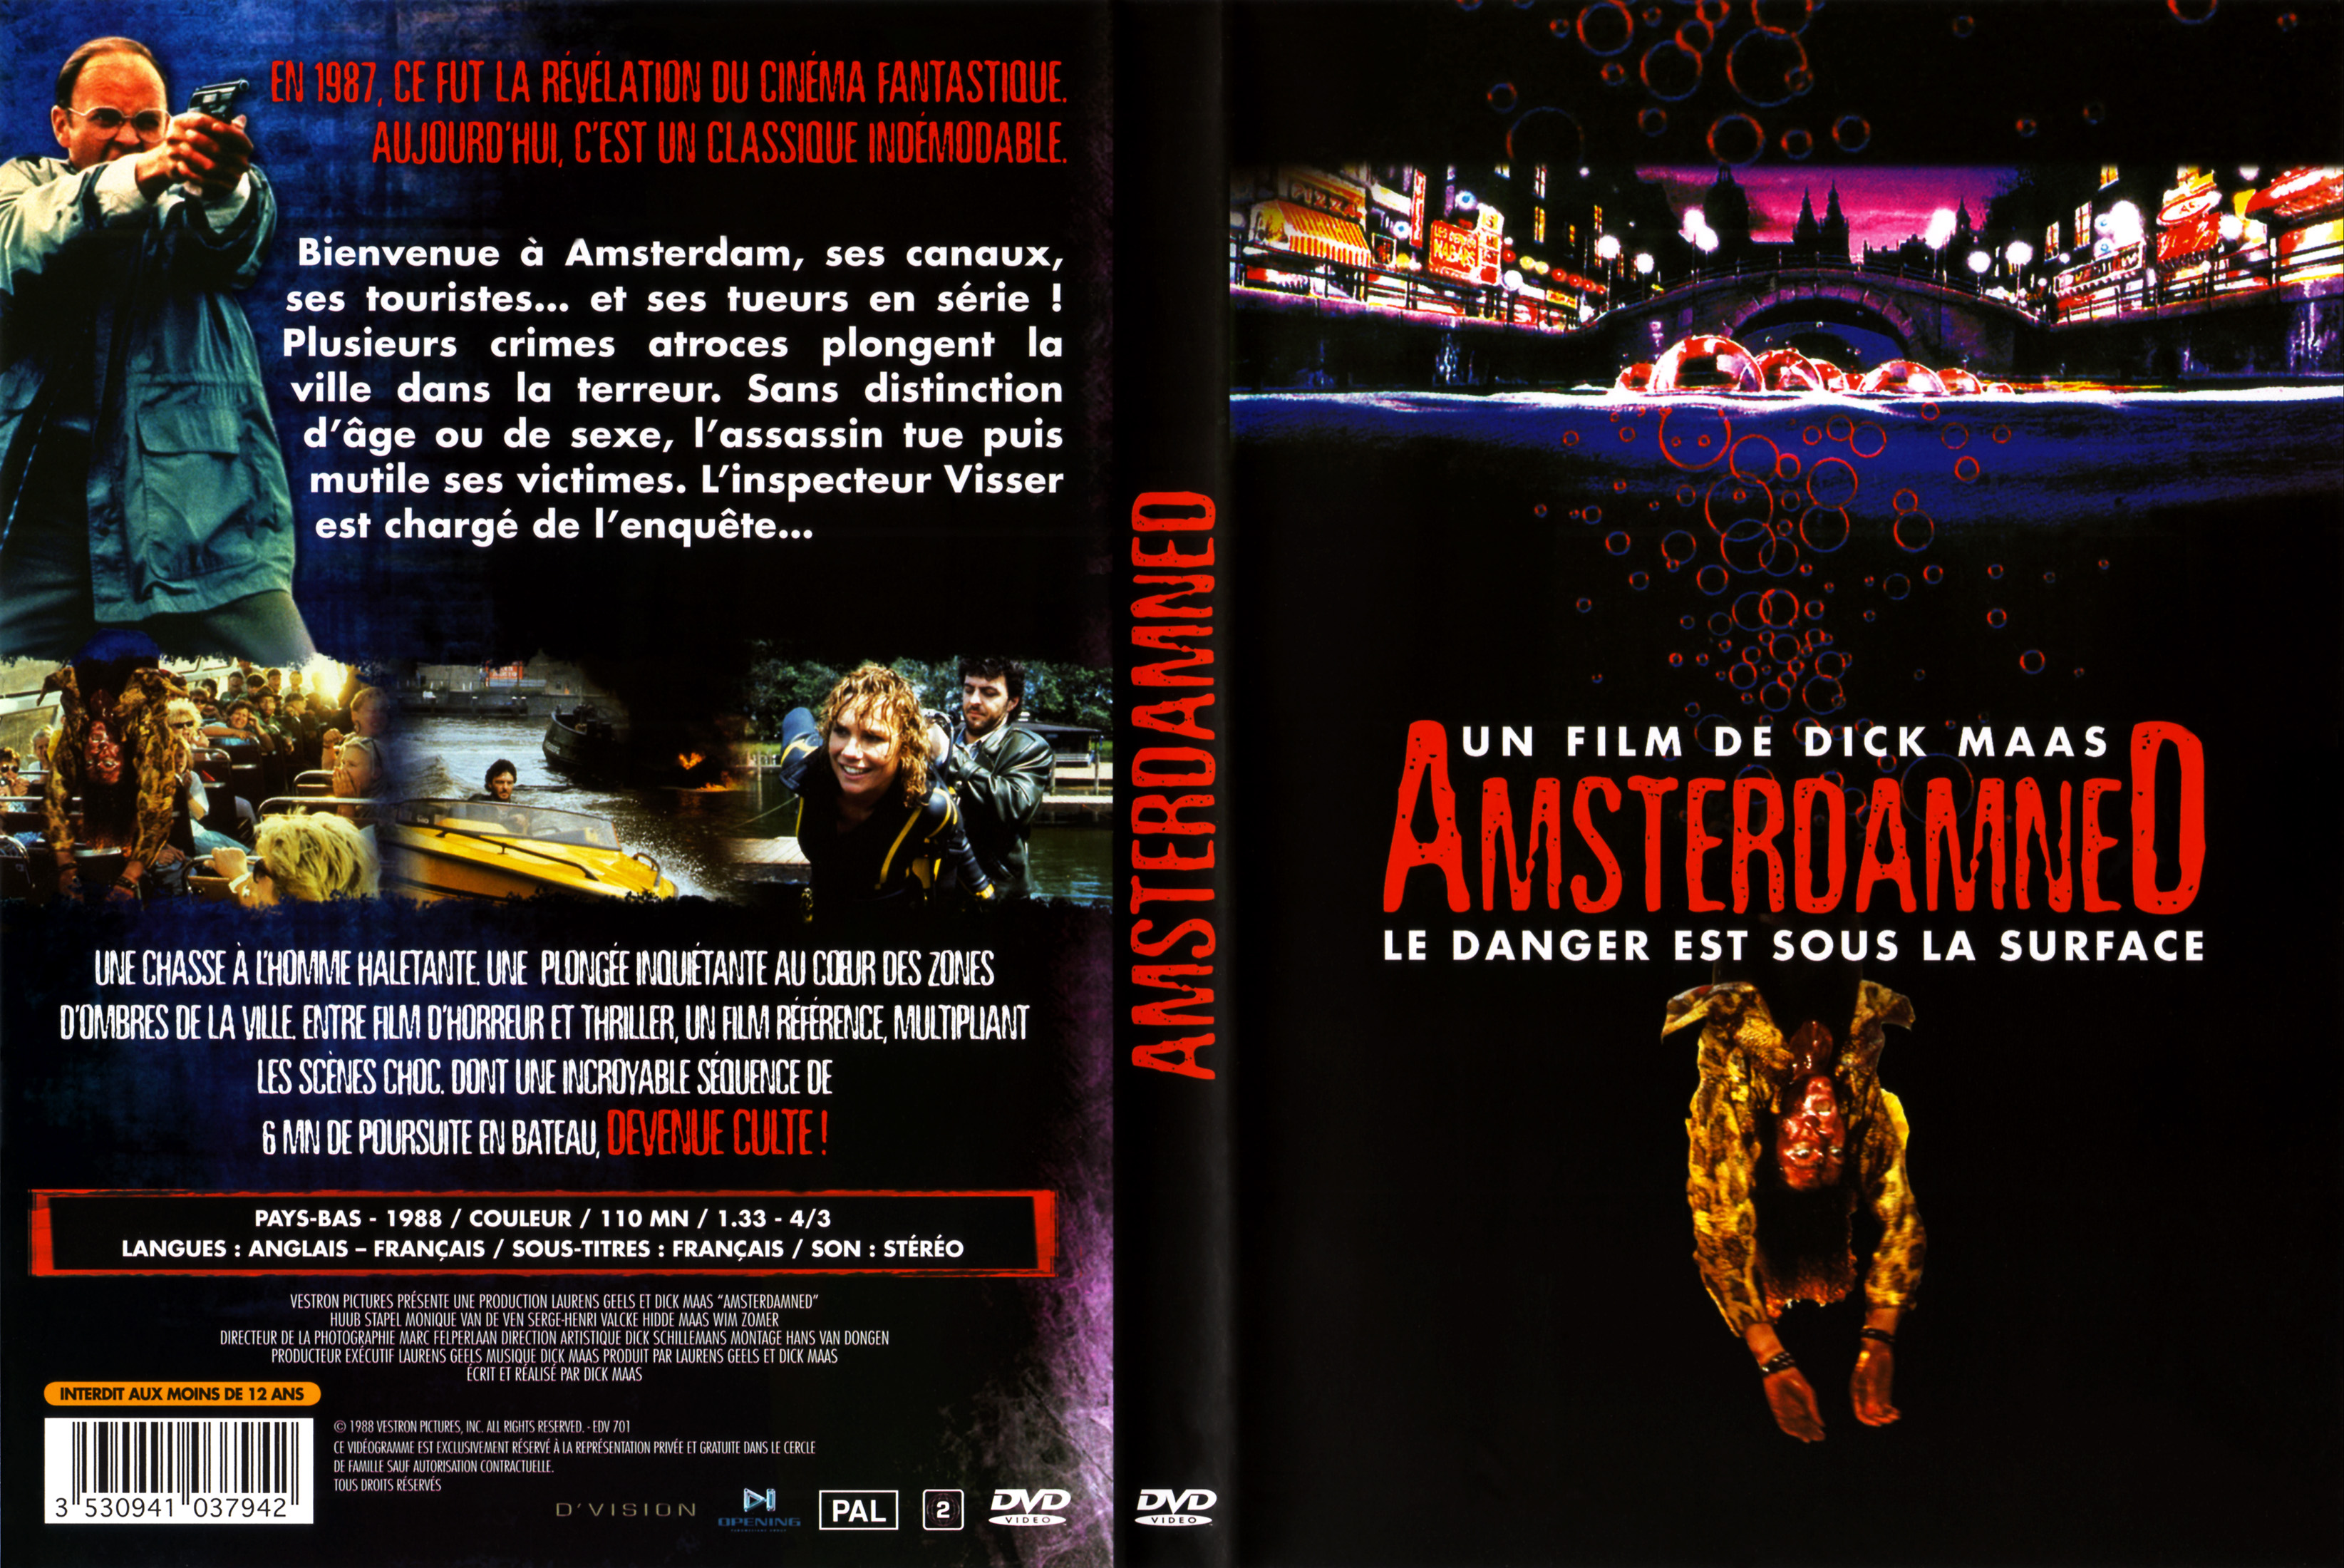 Jaquette DVD Amsterdamned v2